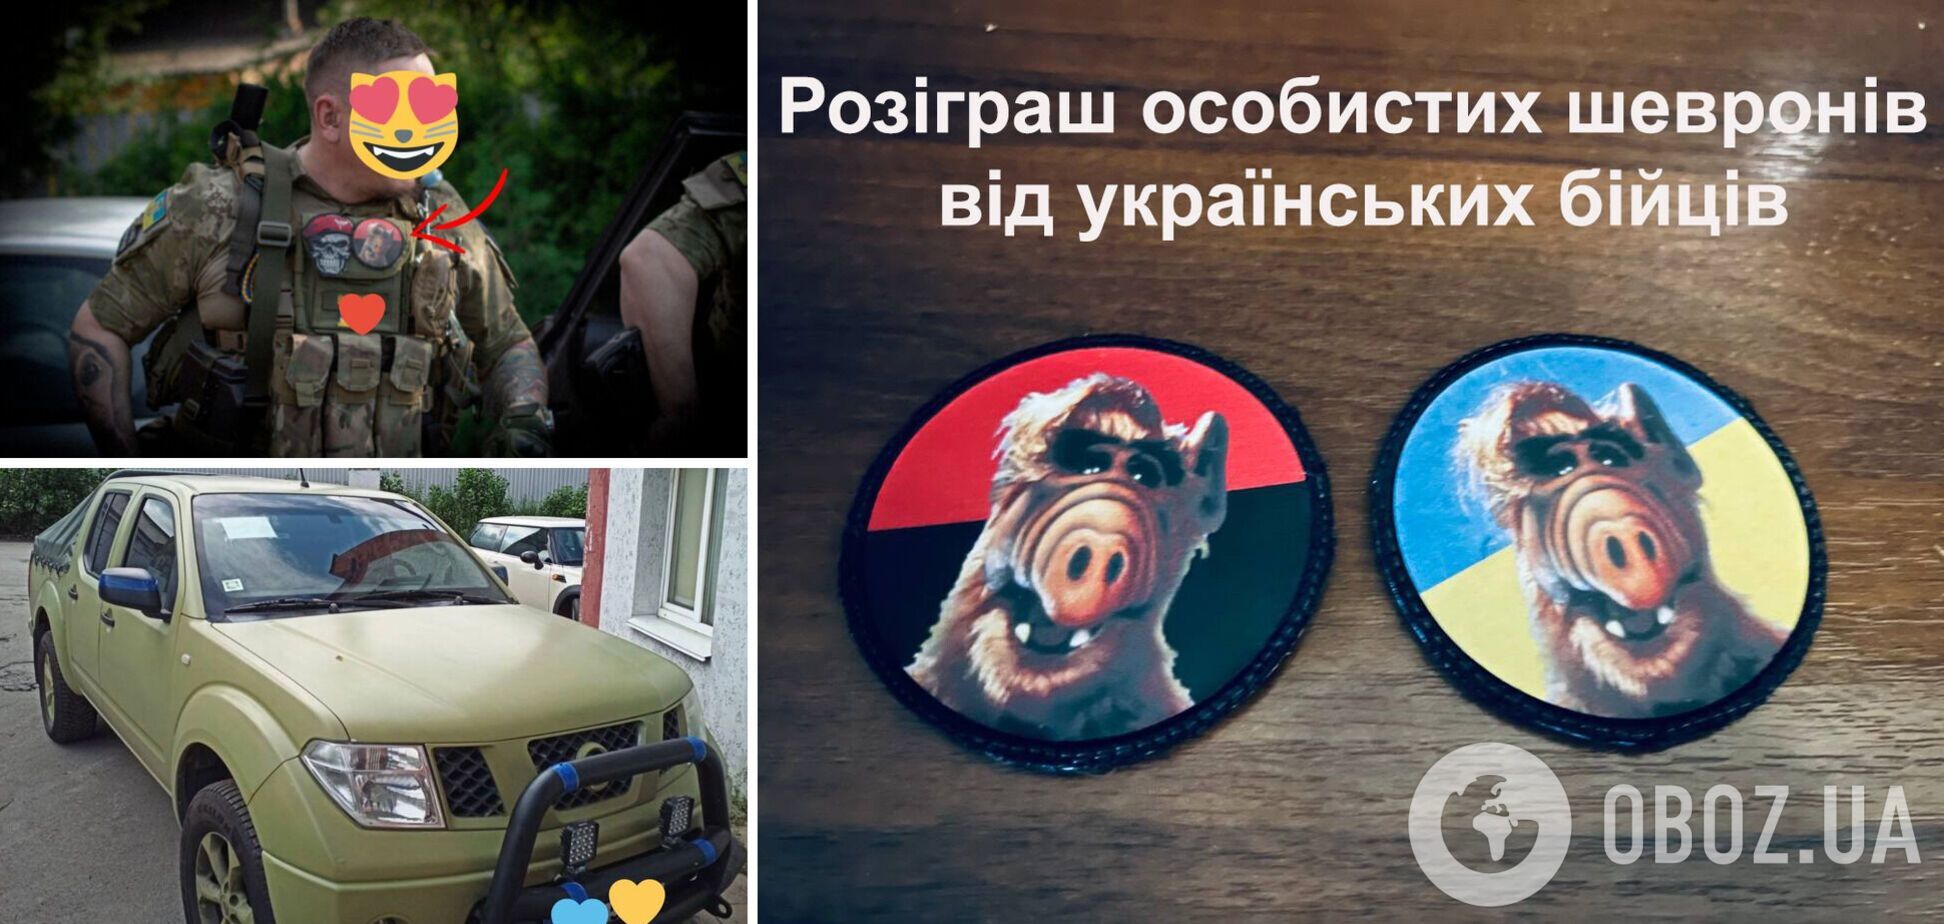 Военным, защищающим Украину на передовой, нужна помощь: OBOZREVATEL проведет розыгрыш личных шевронов от бойцов